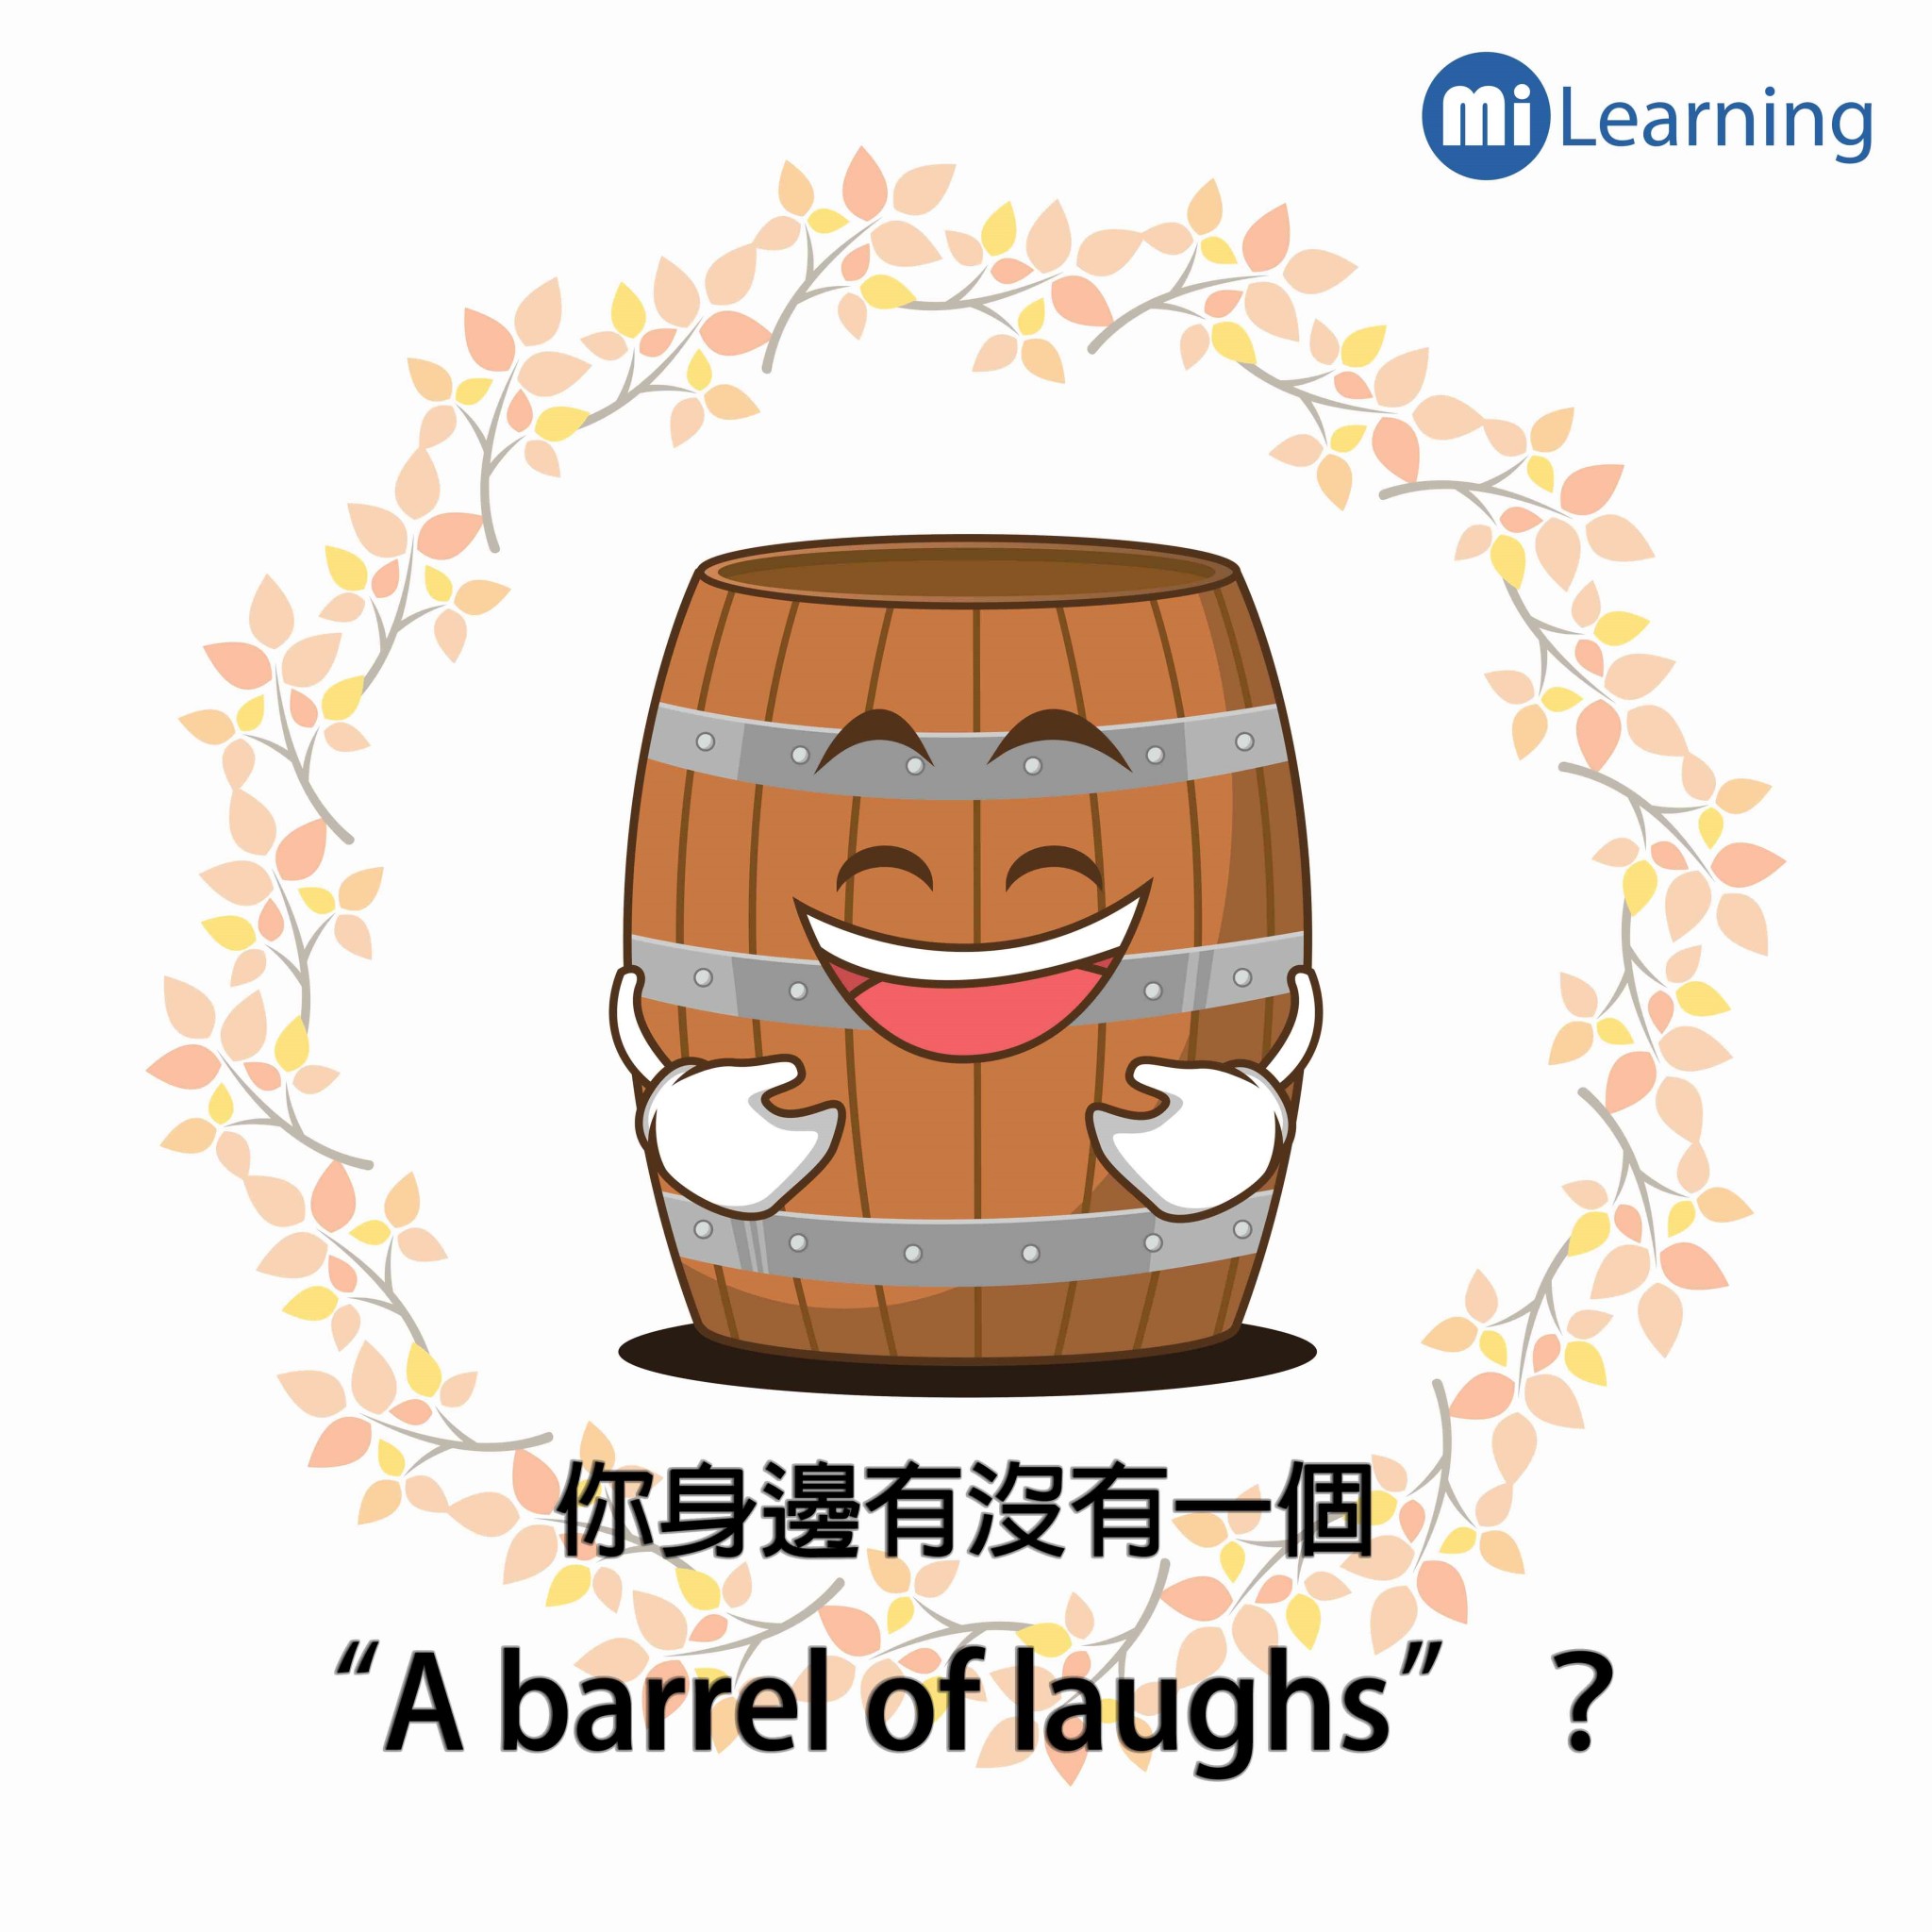 你身邊有沒有一個"A barrel of laughs "呢?